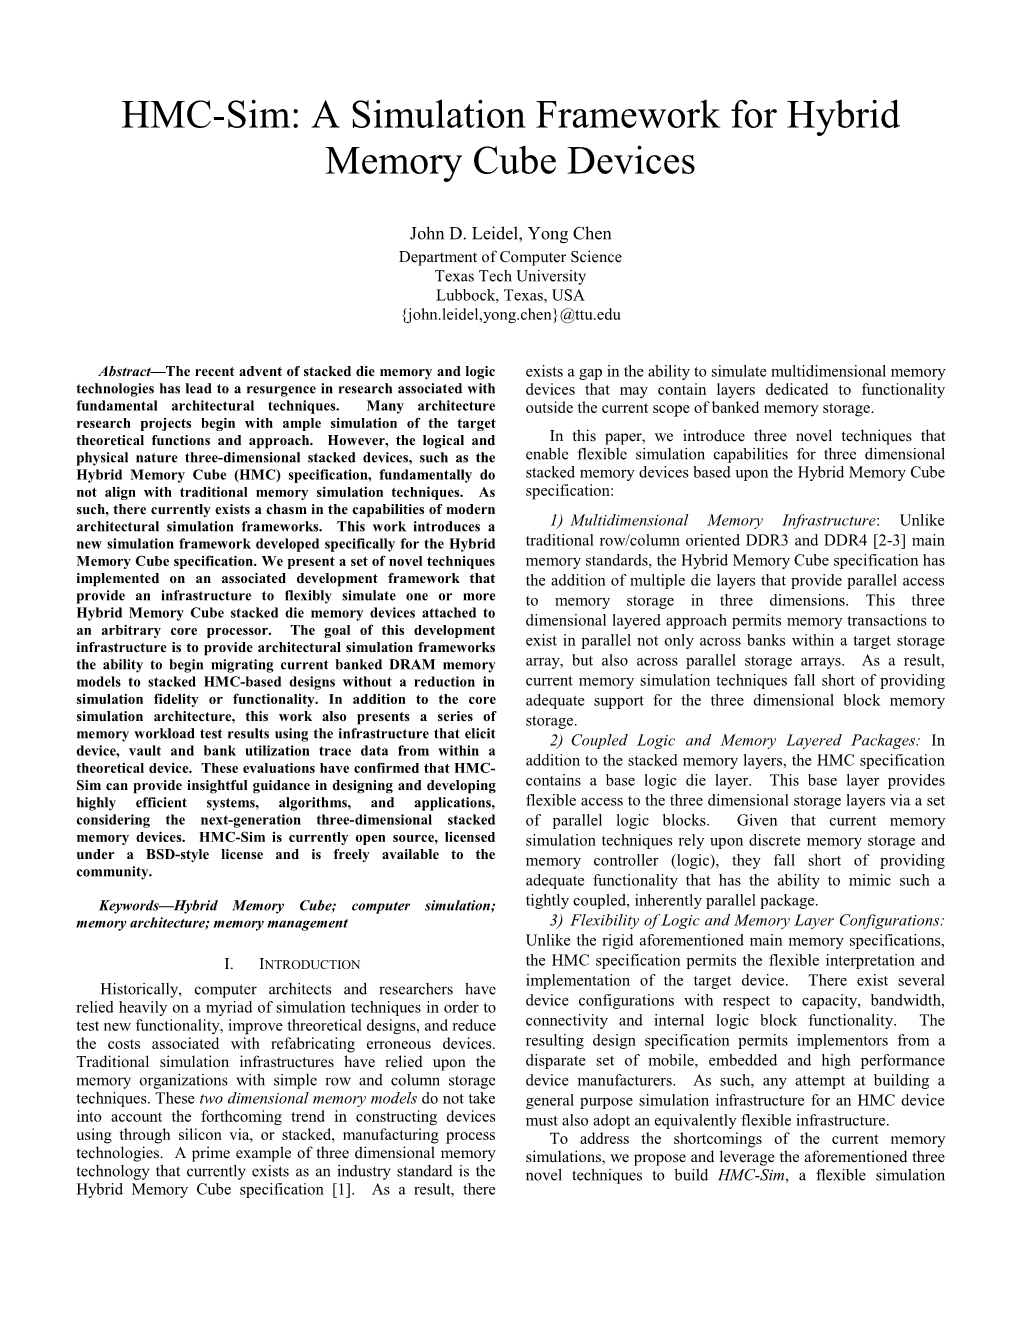 HMC-Sim: a Simulation Framework for Hybrid Memory Cube Devices